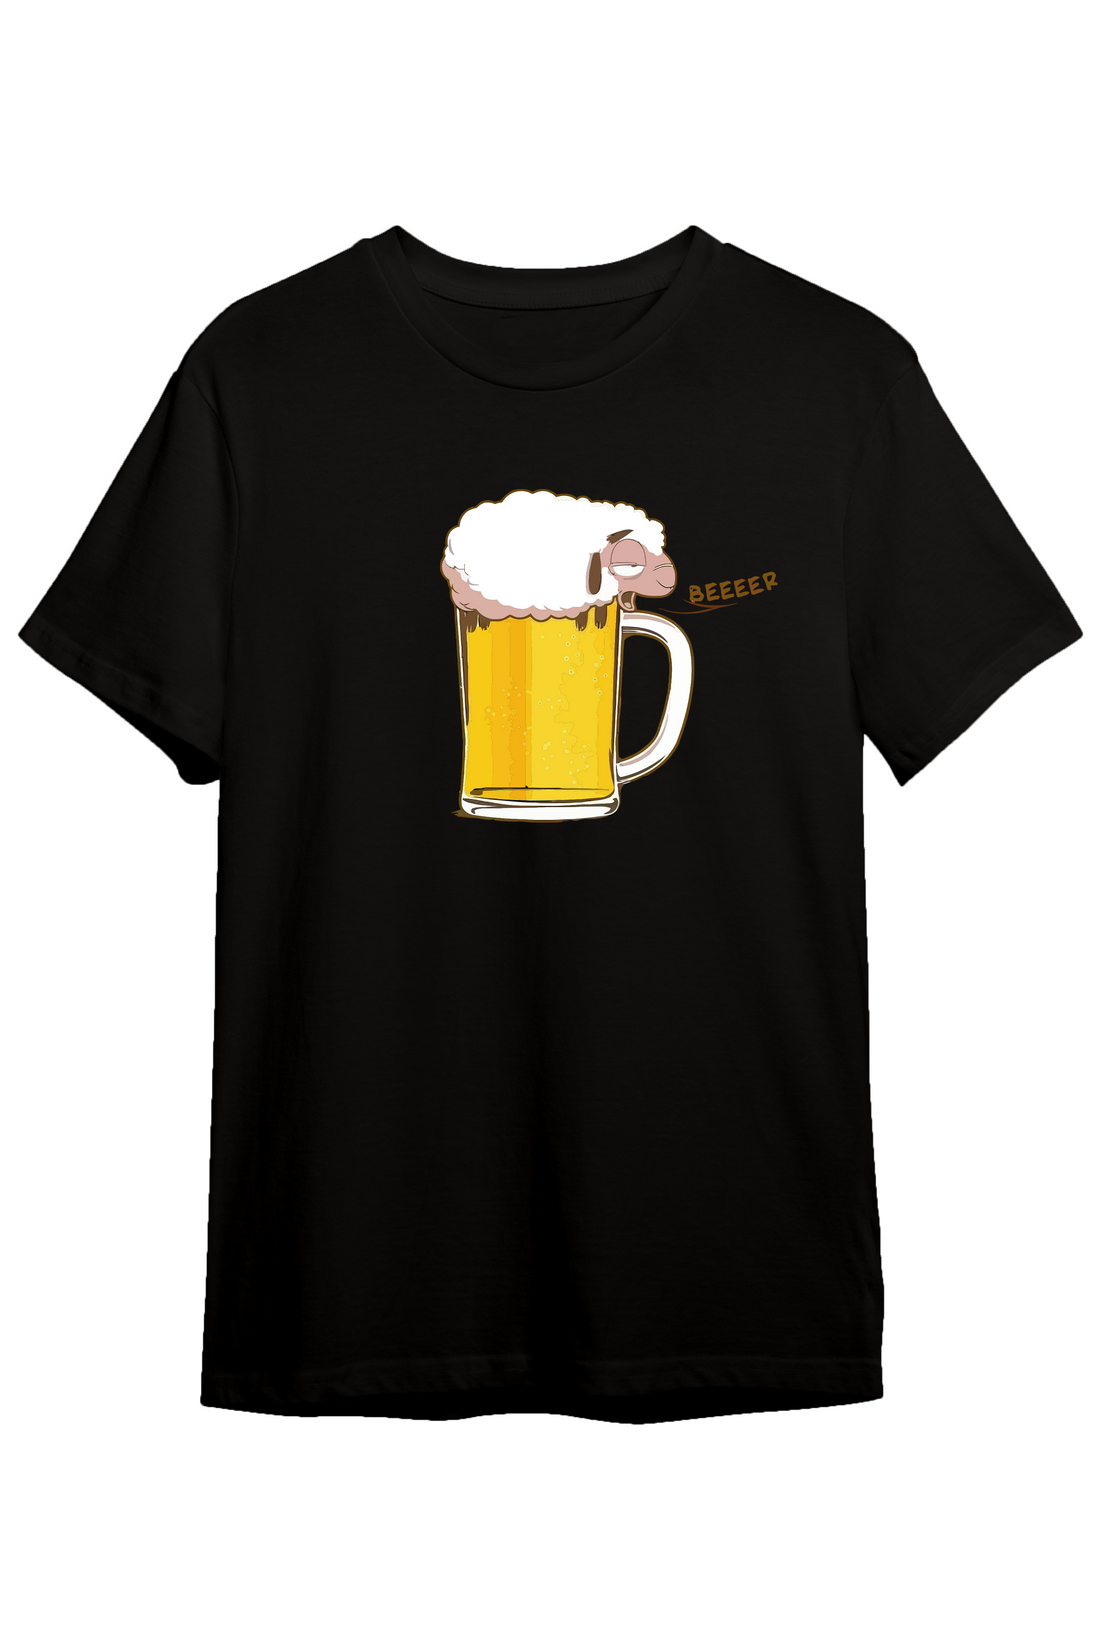 Beer Sheep - Regular Tshirt